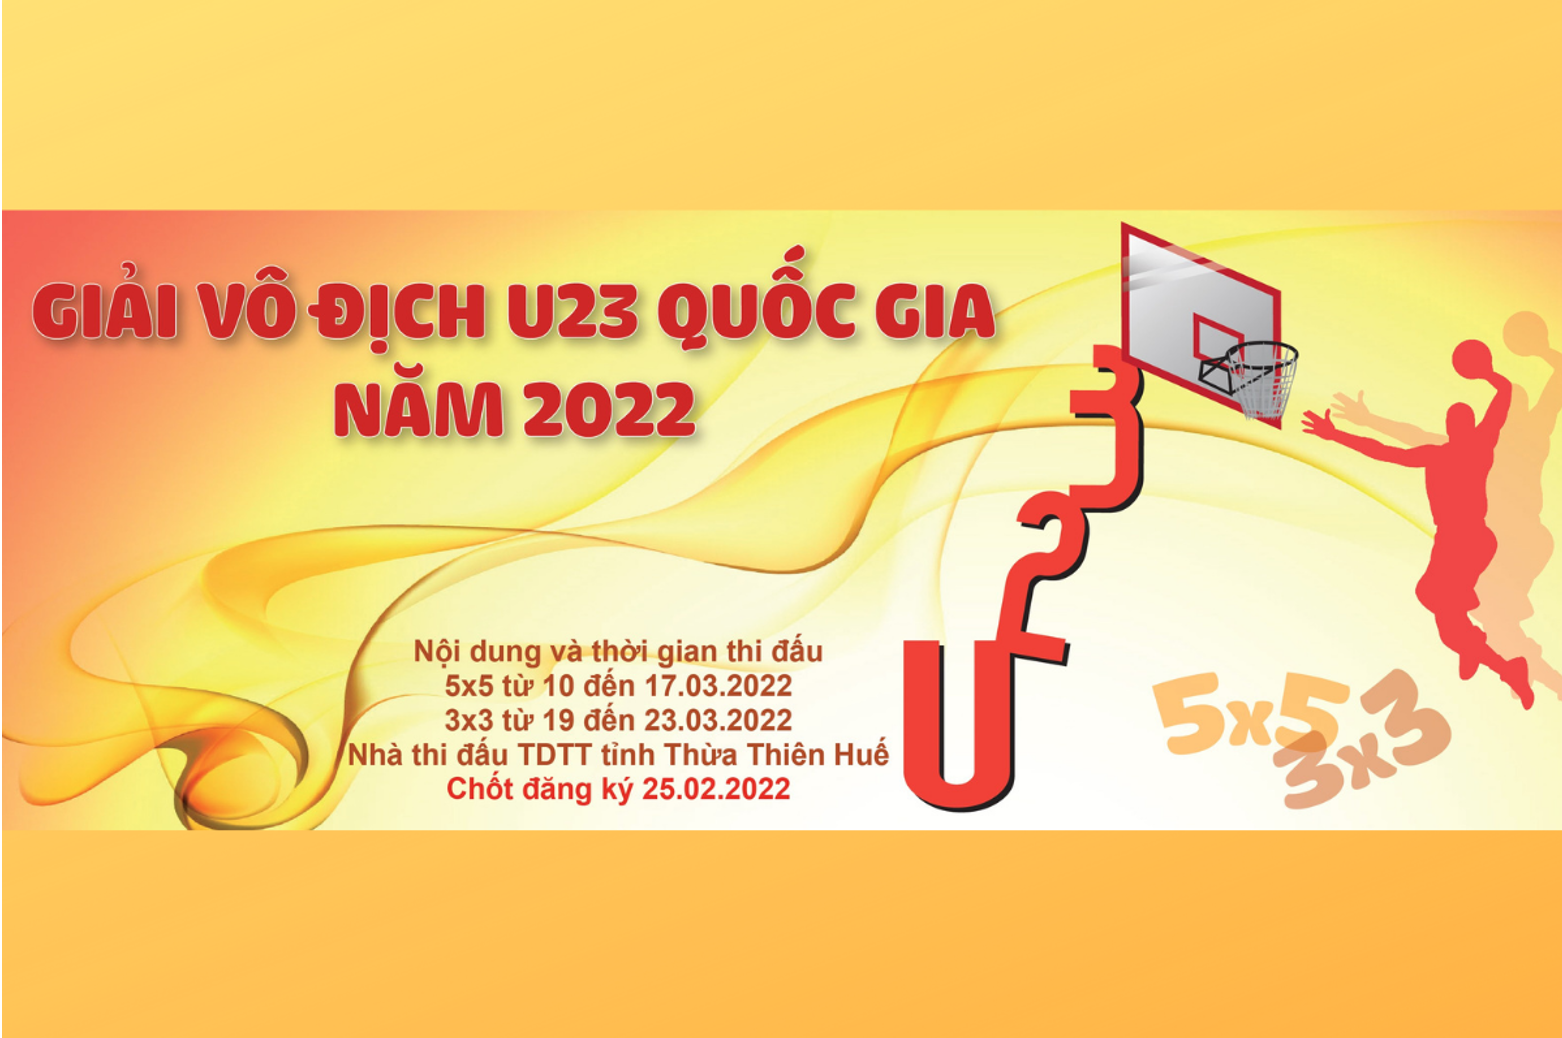 Tháng 3 sôi động với Giải bóng rổ U23 quốc gia 2022 - Ảnh 1.